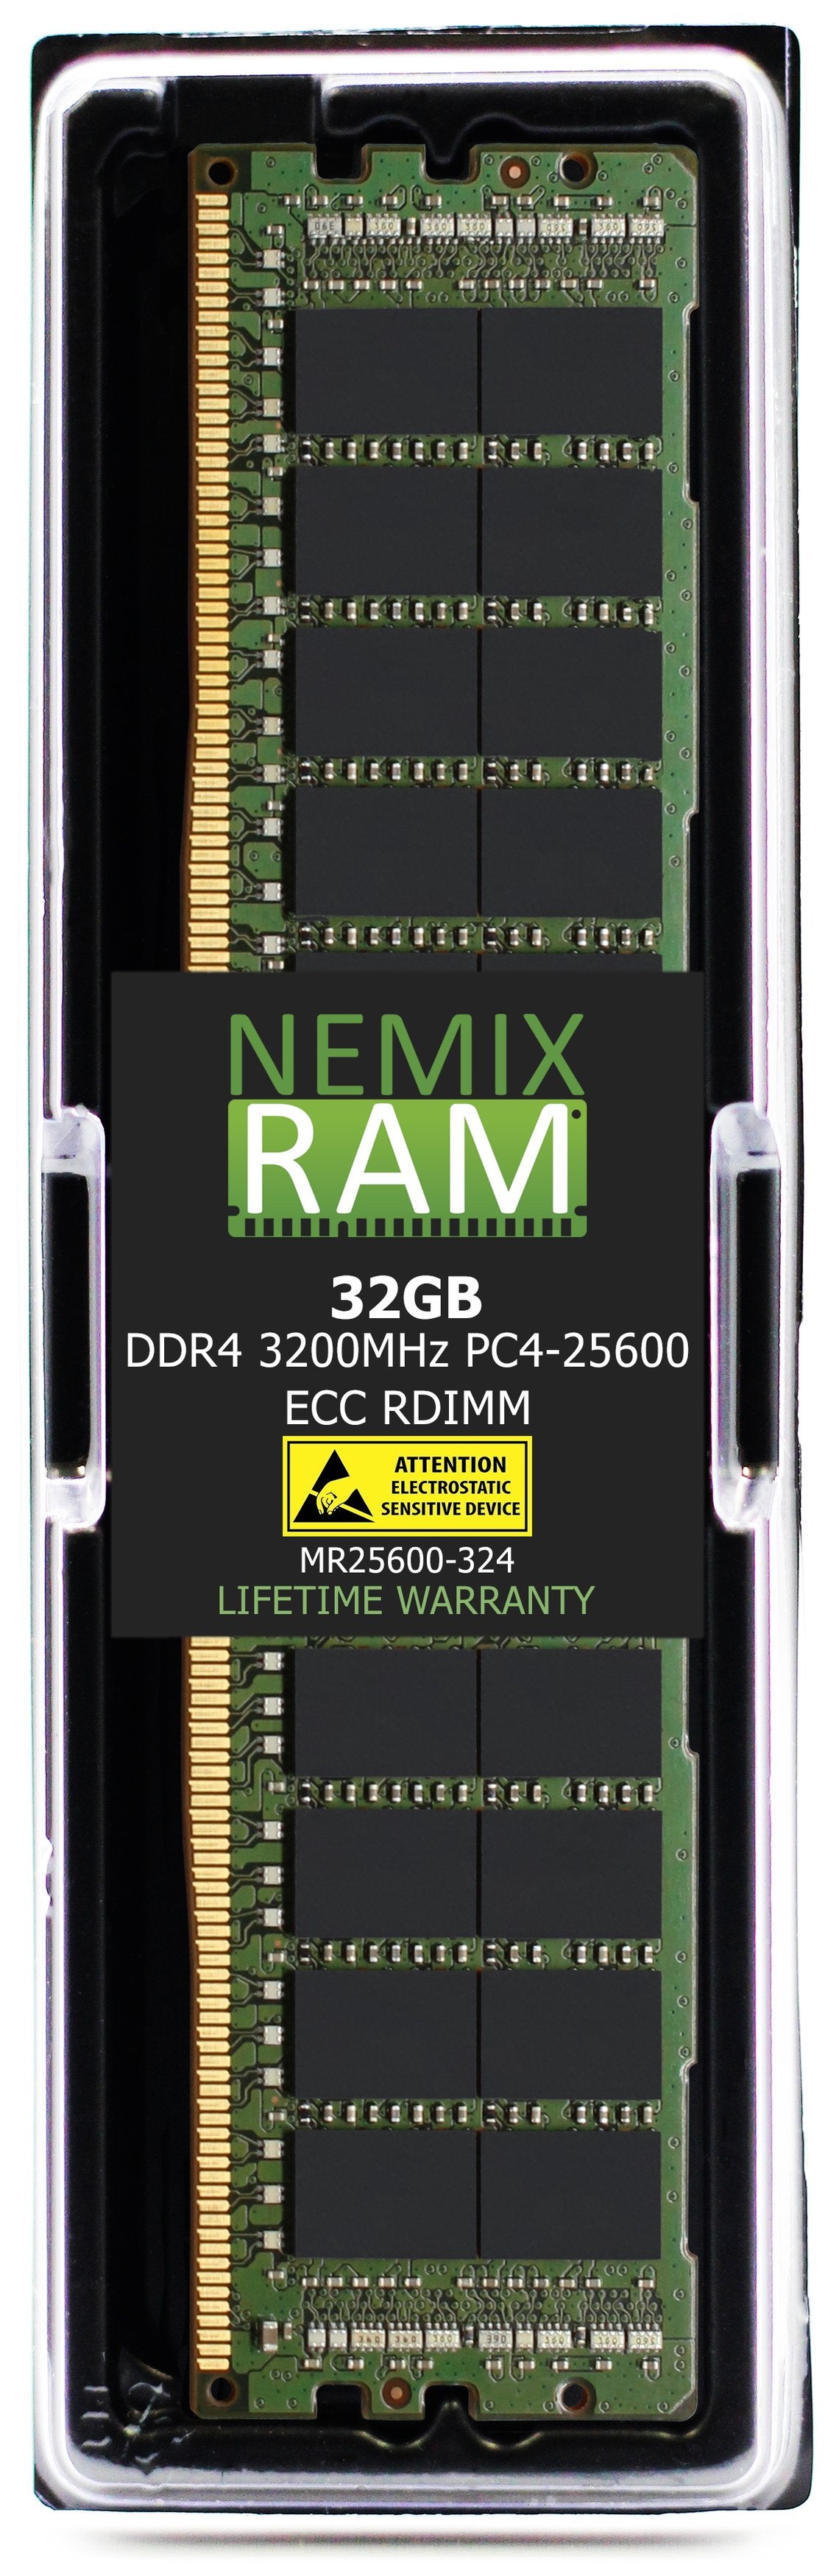 DELL PowerEdge XR11 Rack Server Memory Upgrade